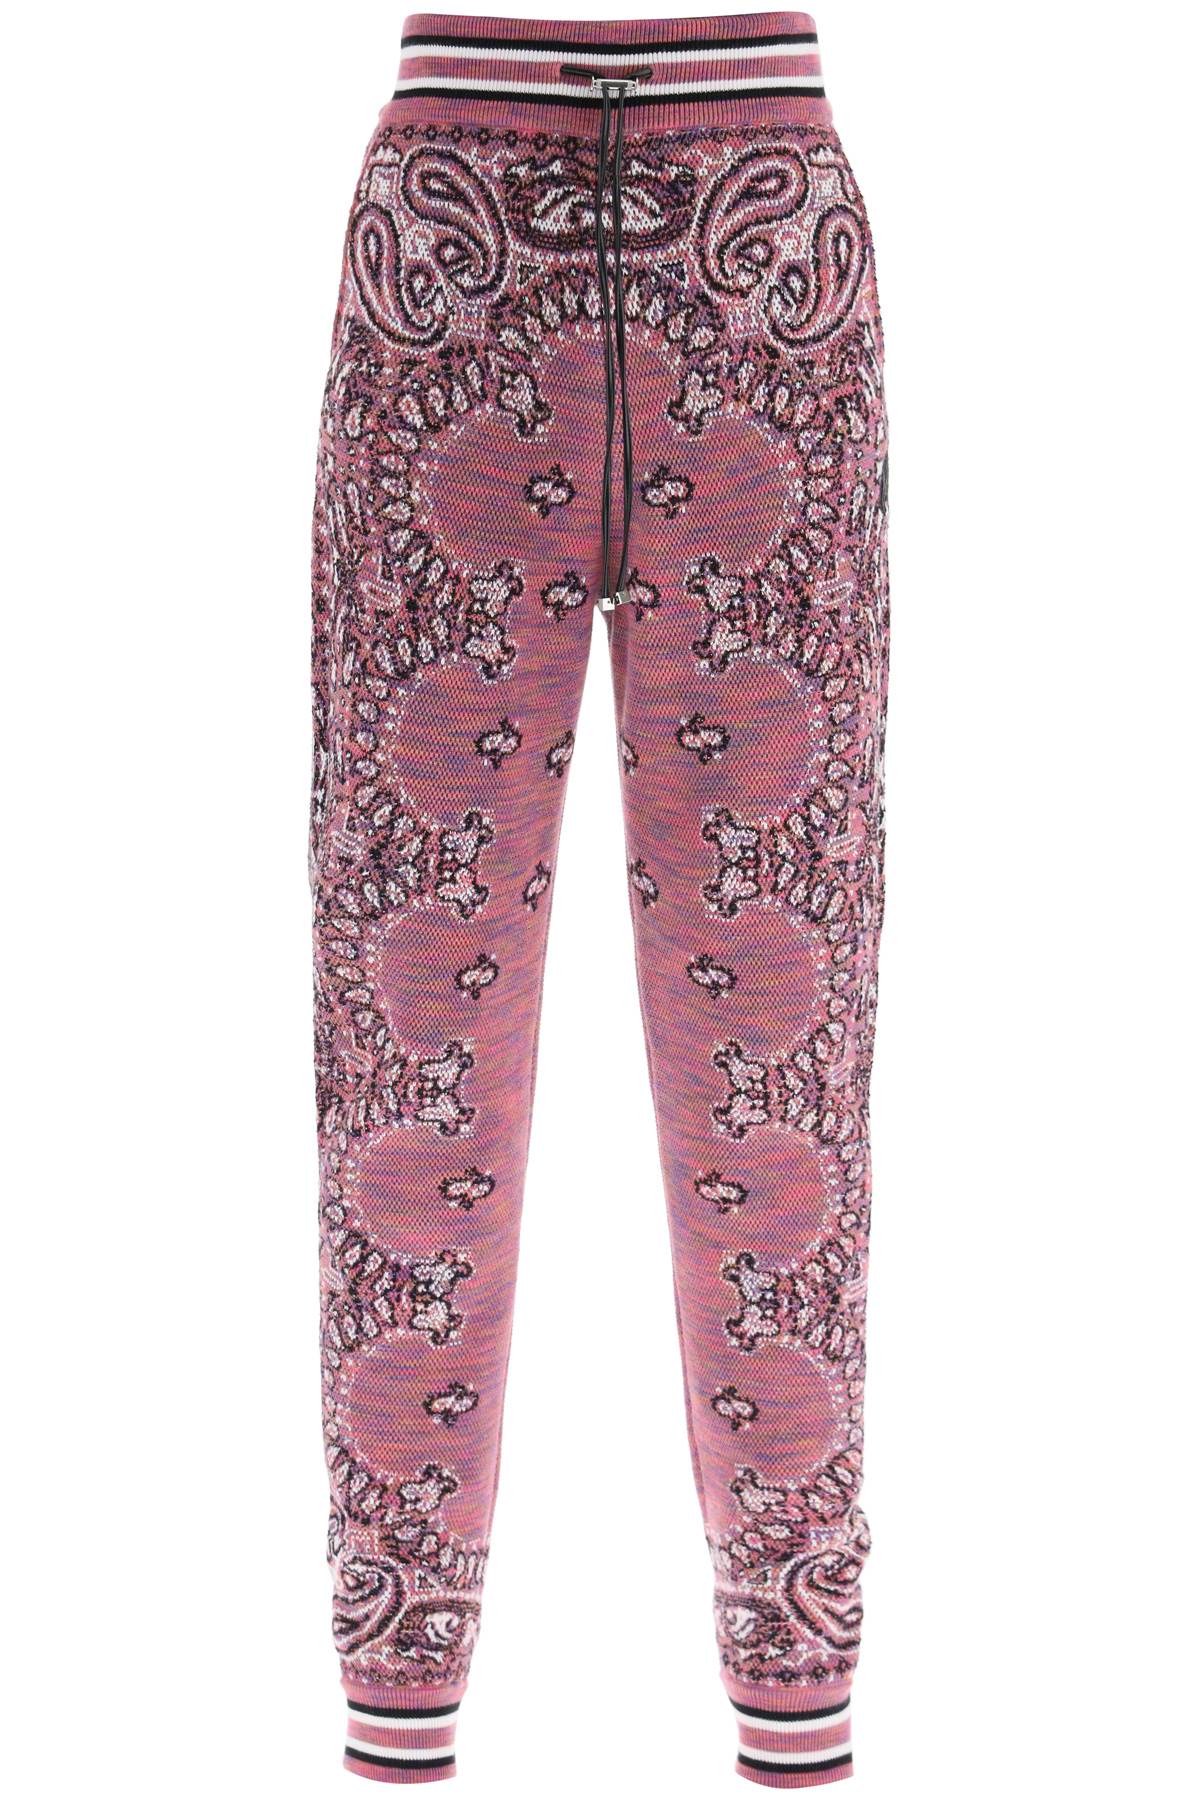 AMIRI Purple Space Dye Bandana Jogger Pants for Women - SS23 Collection